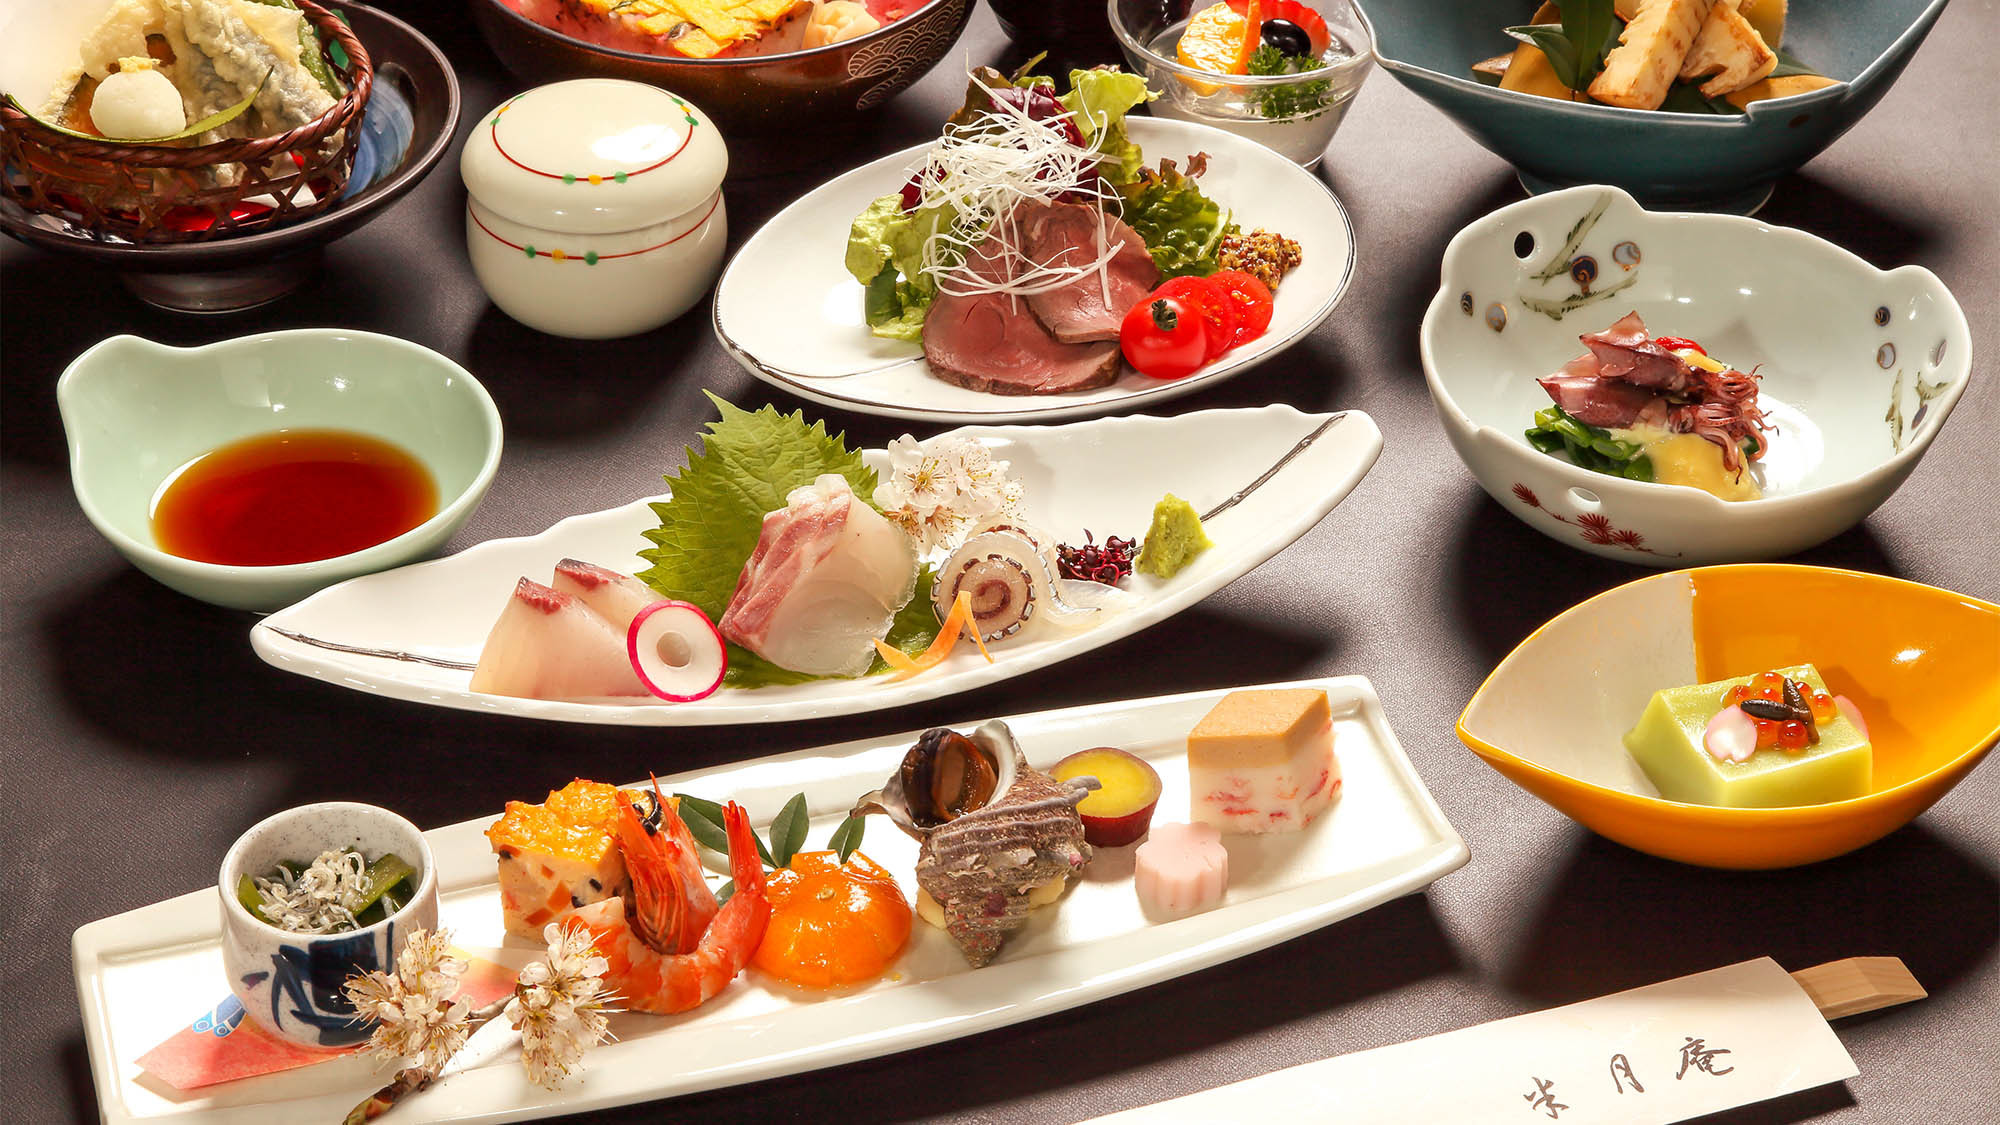 ・おもてなし懐石華やかな料理に加え、岩国寿司も味わえます